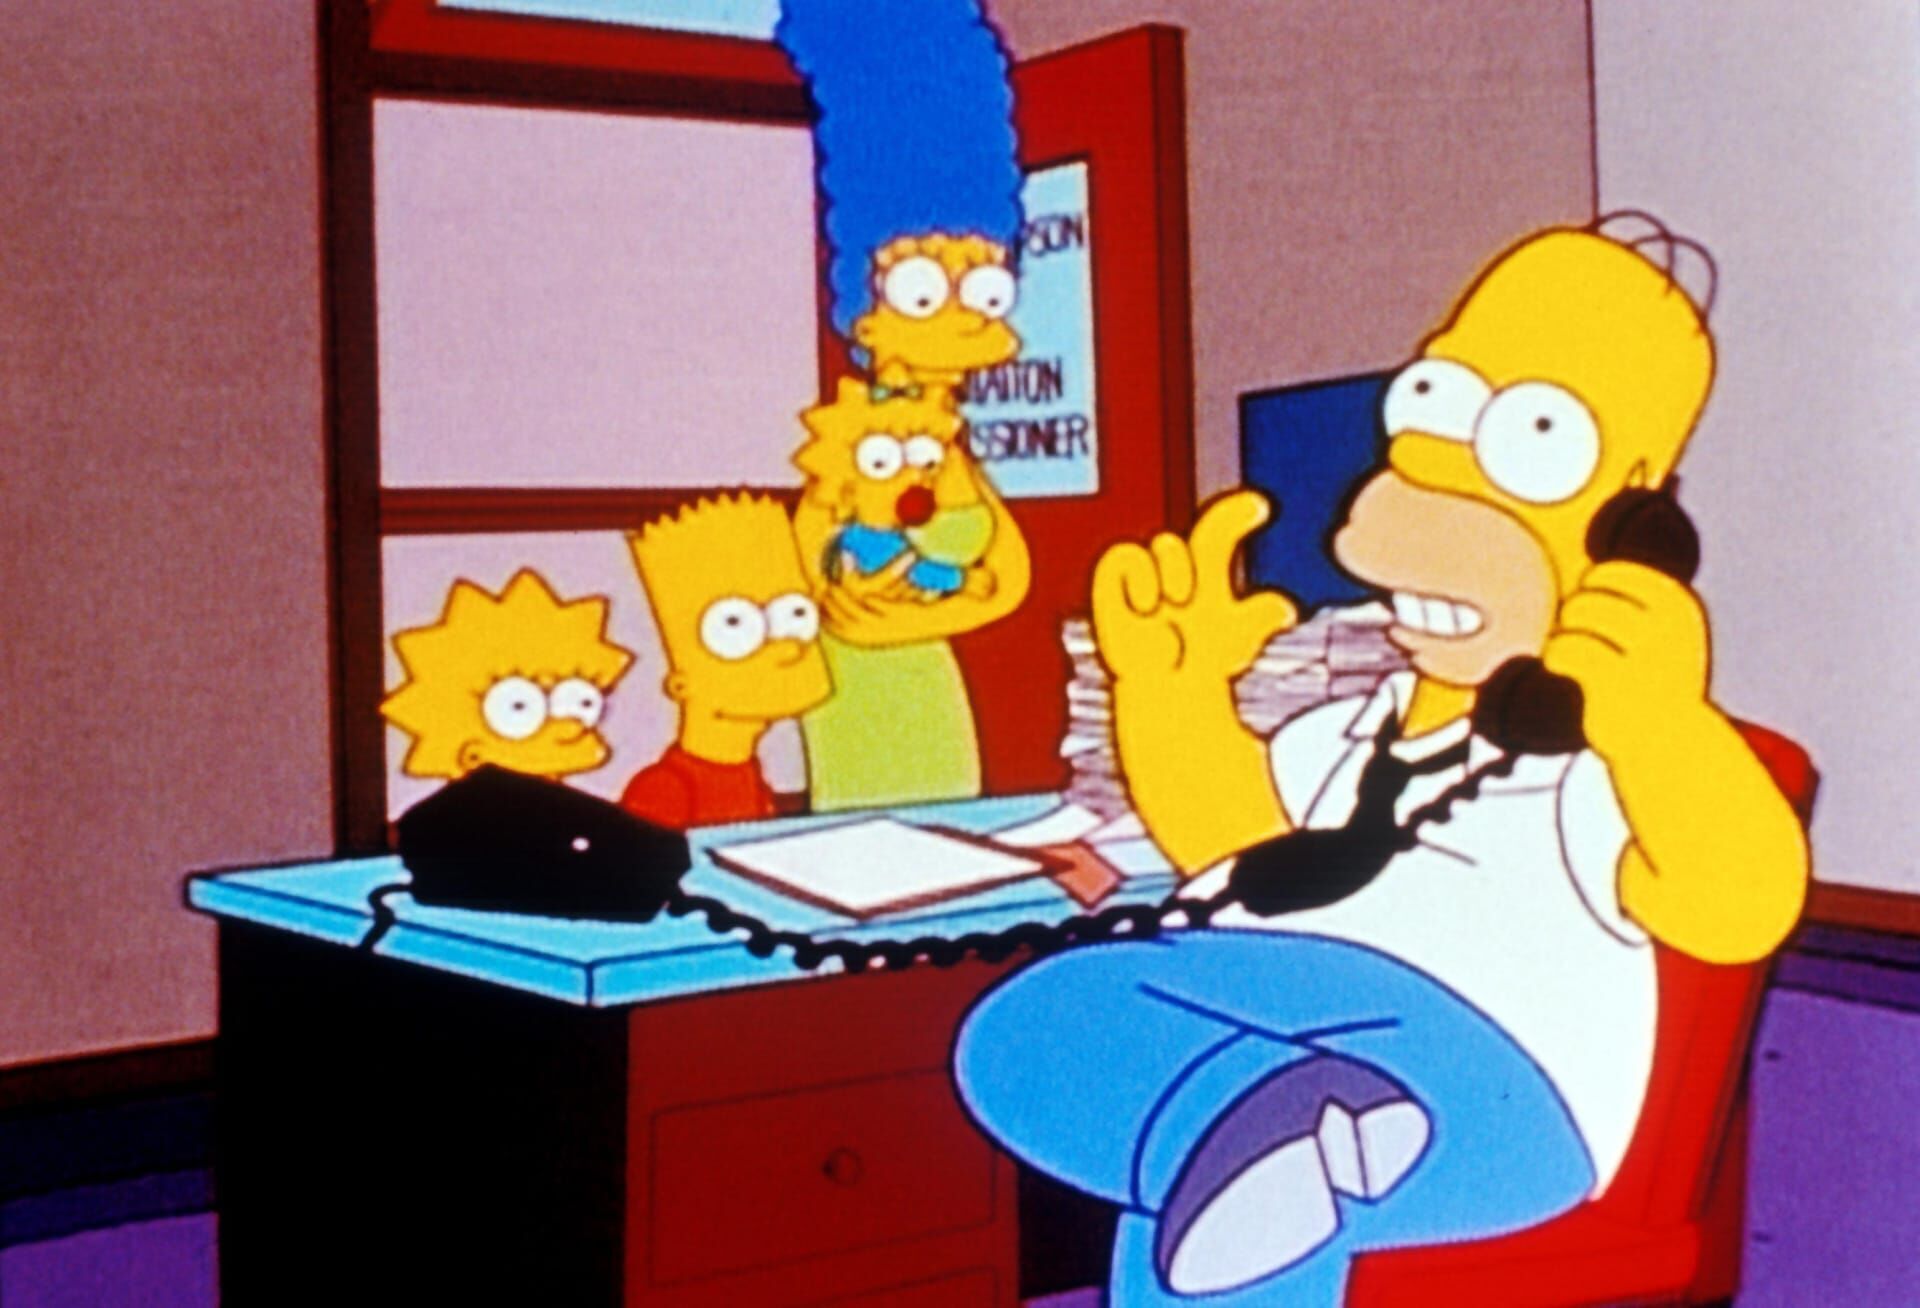 Les Simpson Saison 9 Épisode 22